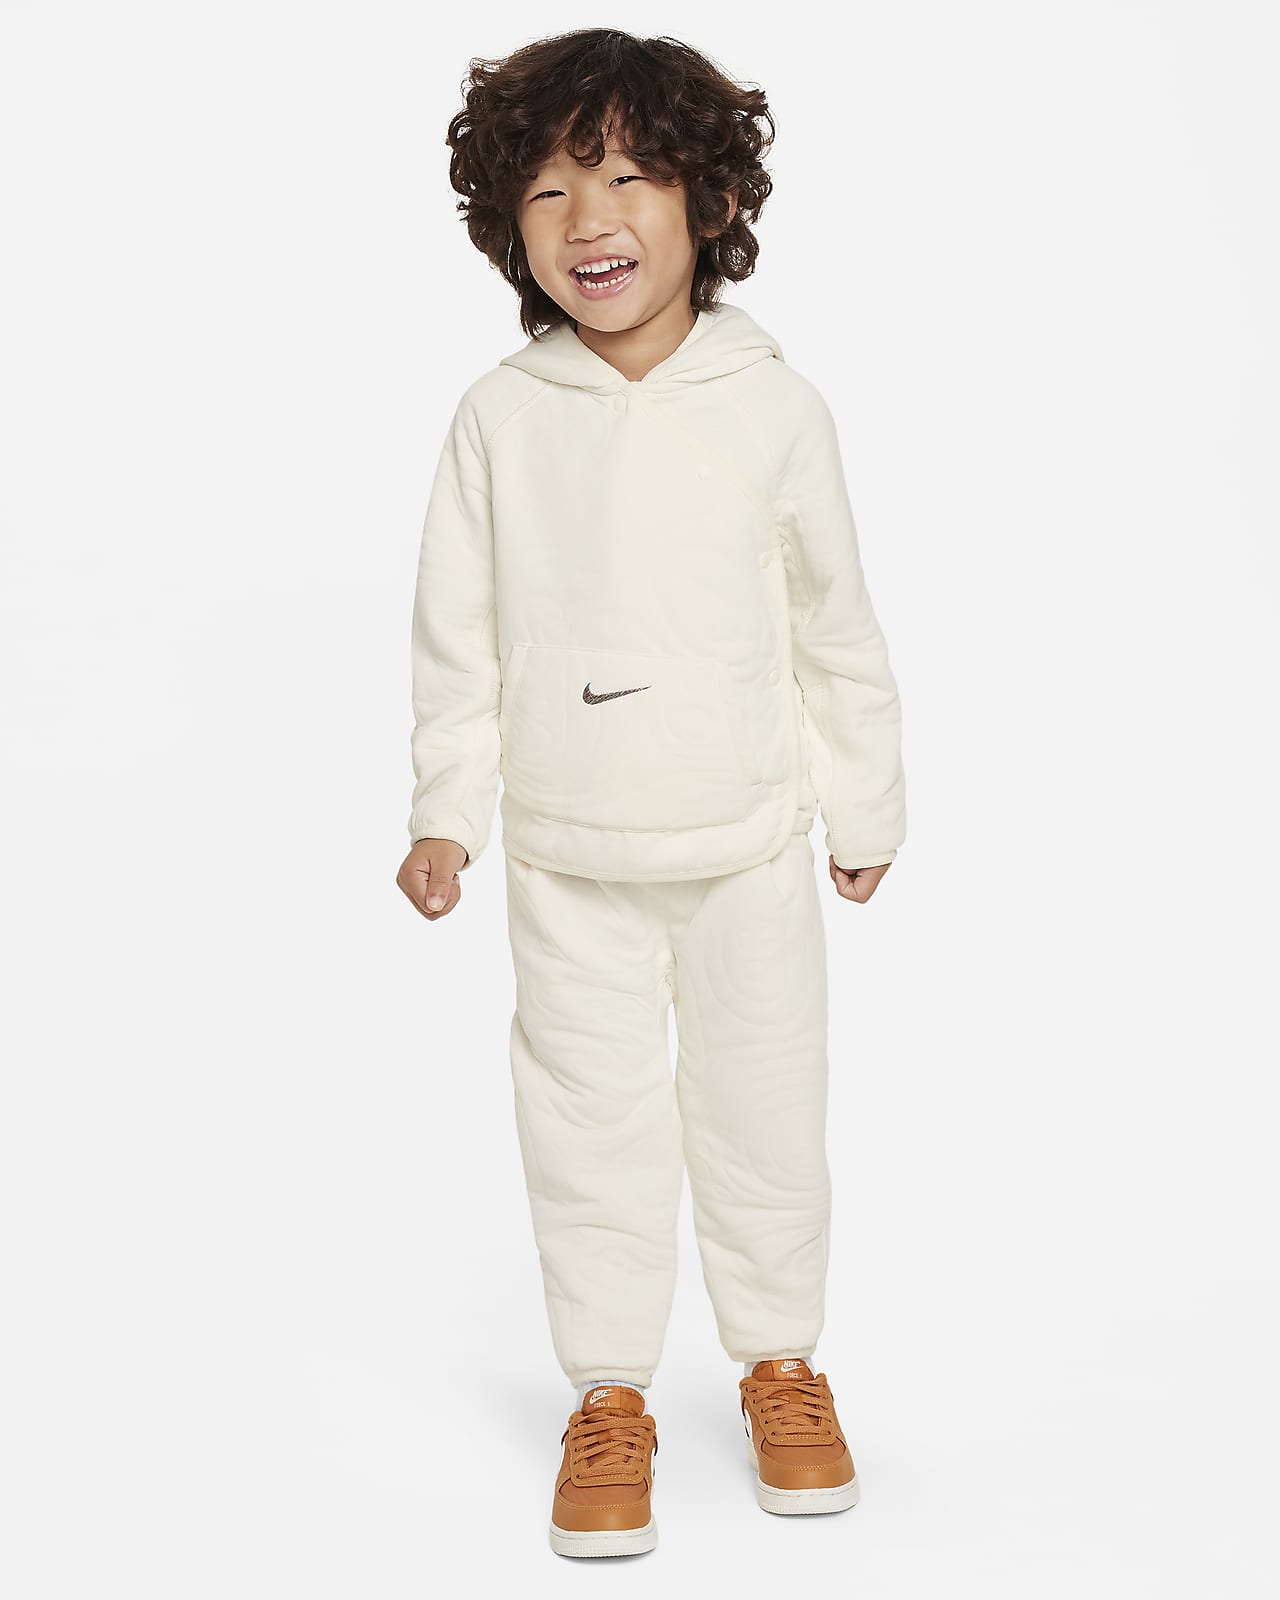 Nike ReadySet Toddler 2-Piece Snap Jacket Set